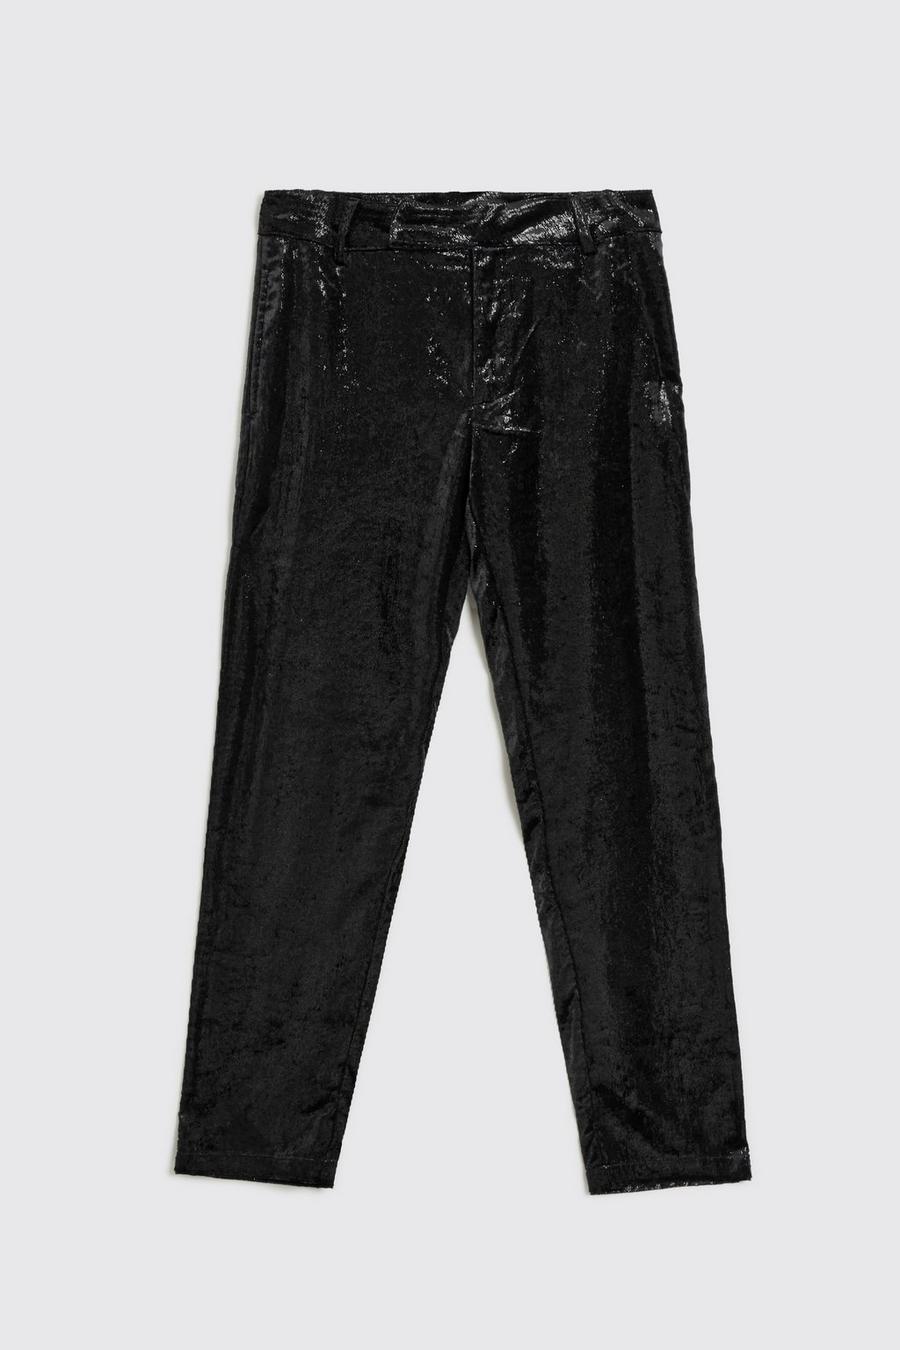 Pantalon slim métallisé, Black noir